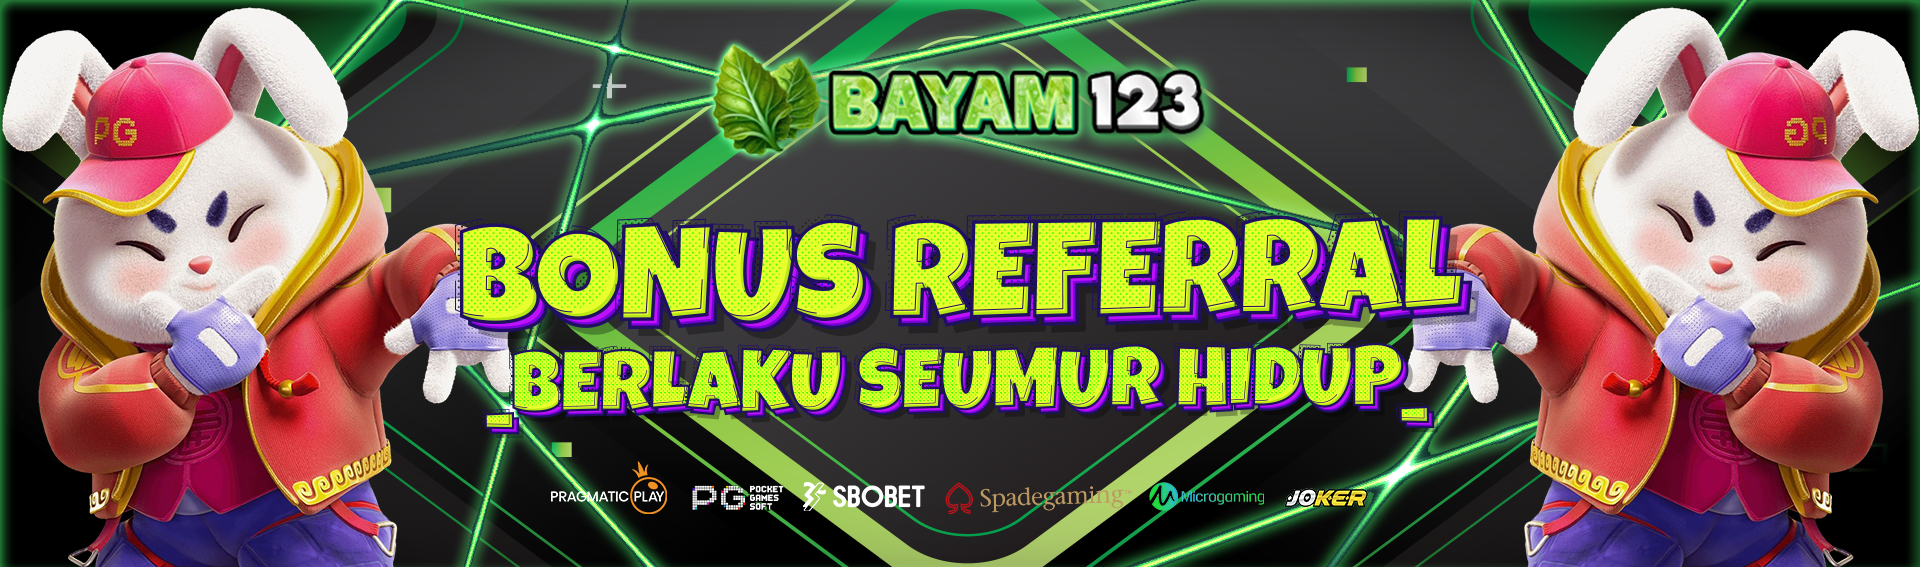 bonus referral bayam123